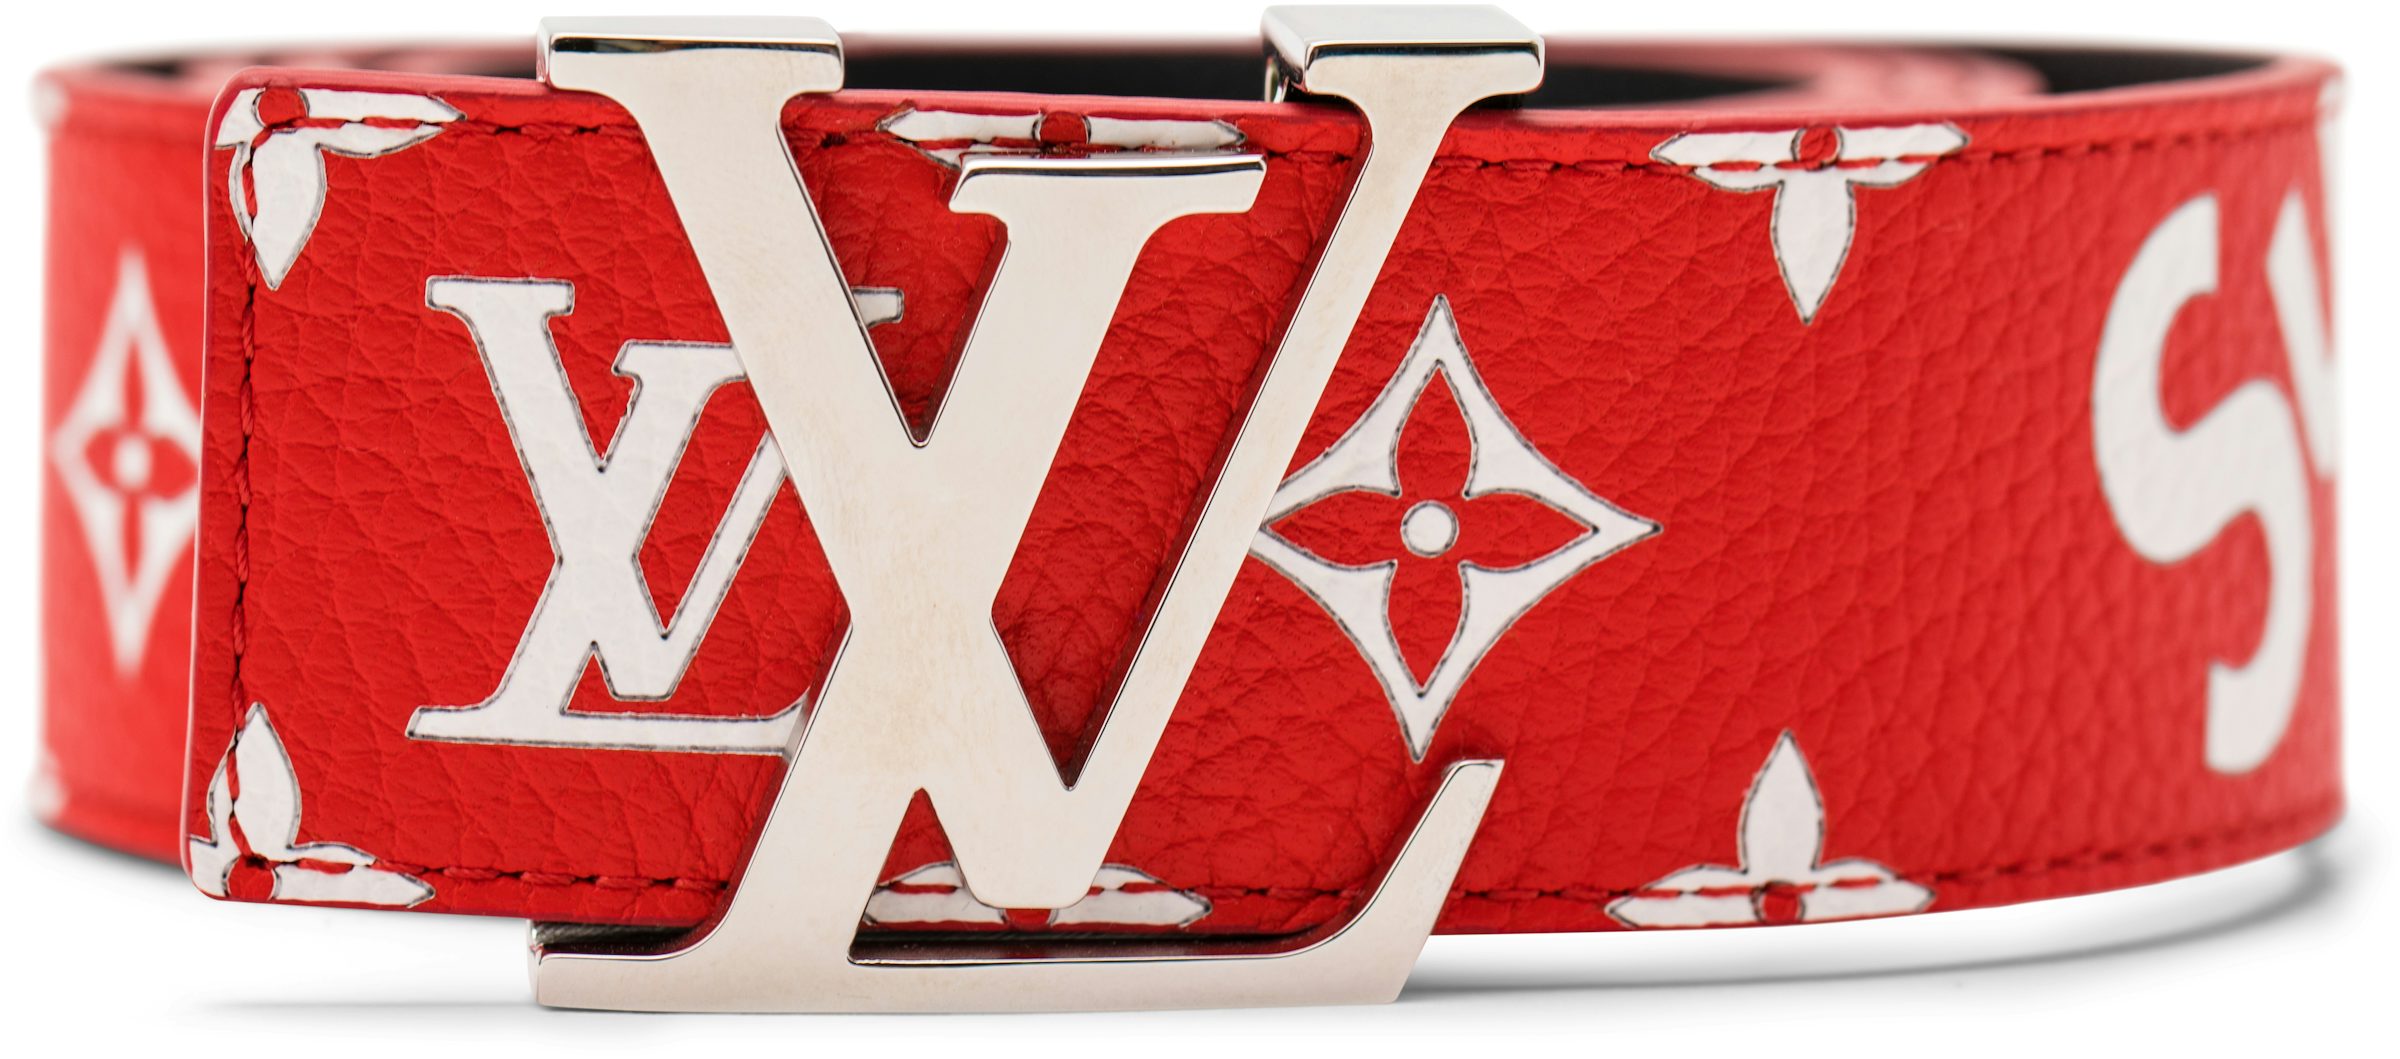 StockX Authenticates the $70,000 Louis Vuitton x Supreme Trunk - StockX News